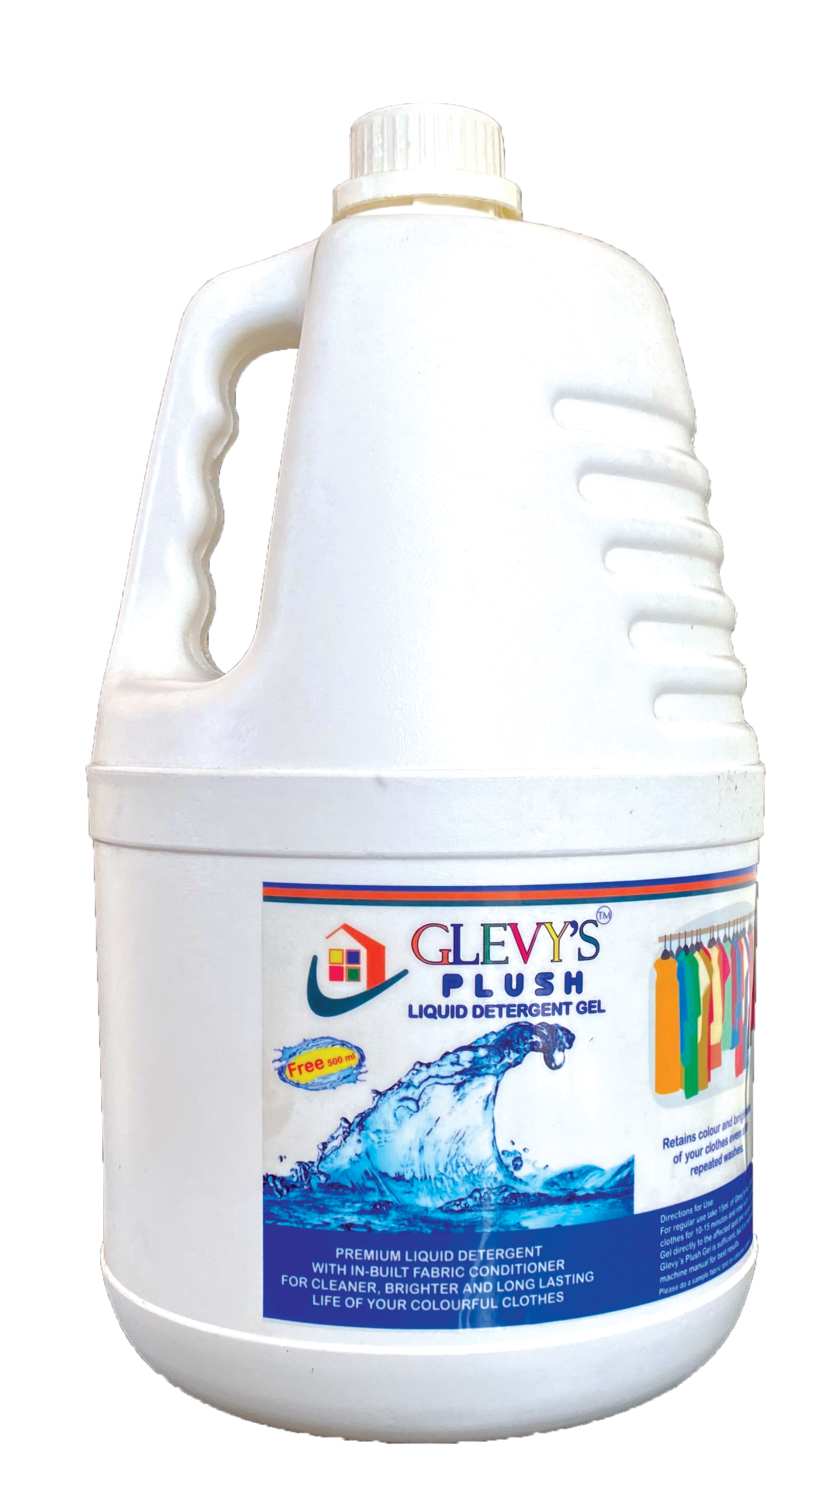 GLEVY&#39;S Plush Liquid Detergent Gel - 5 Liter